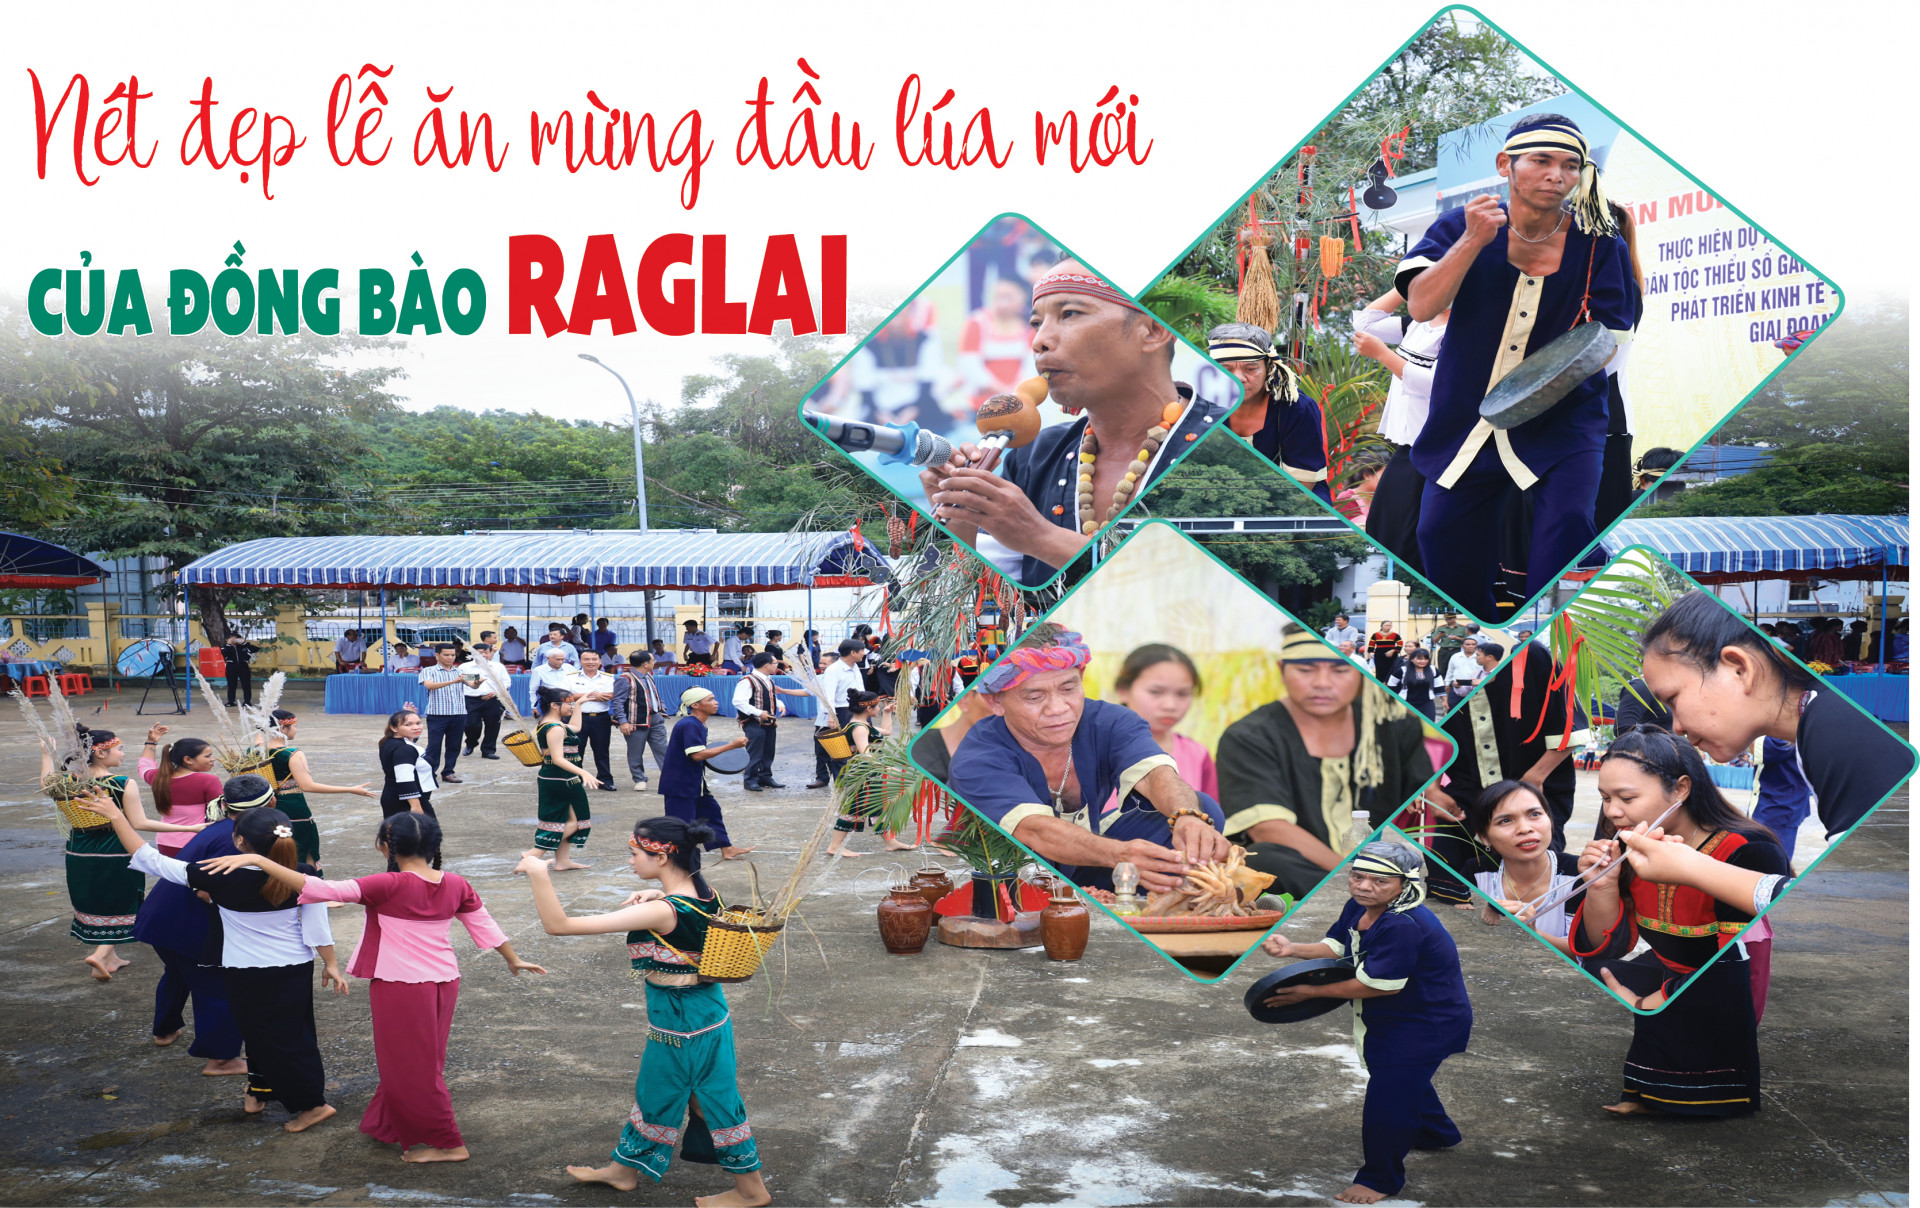 E-magazine: Nét đẹp lễ ăn mừng đầu lúa mới của đồng bào Raglai